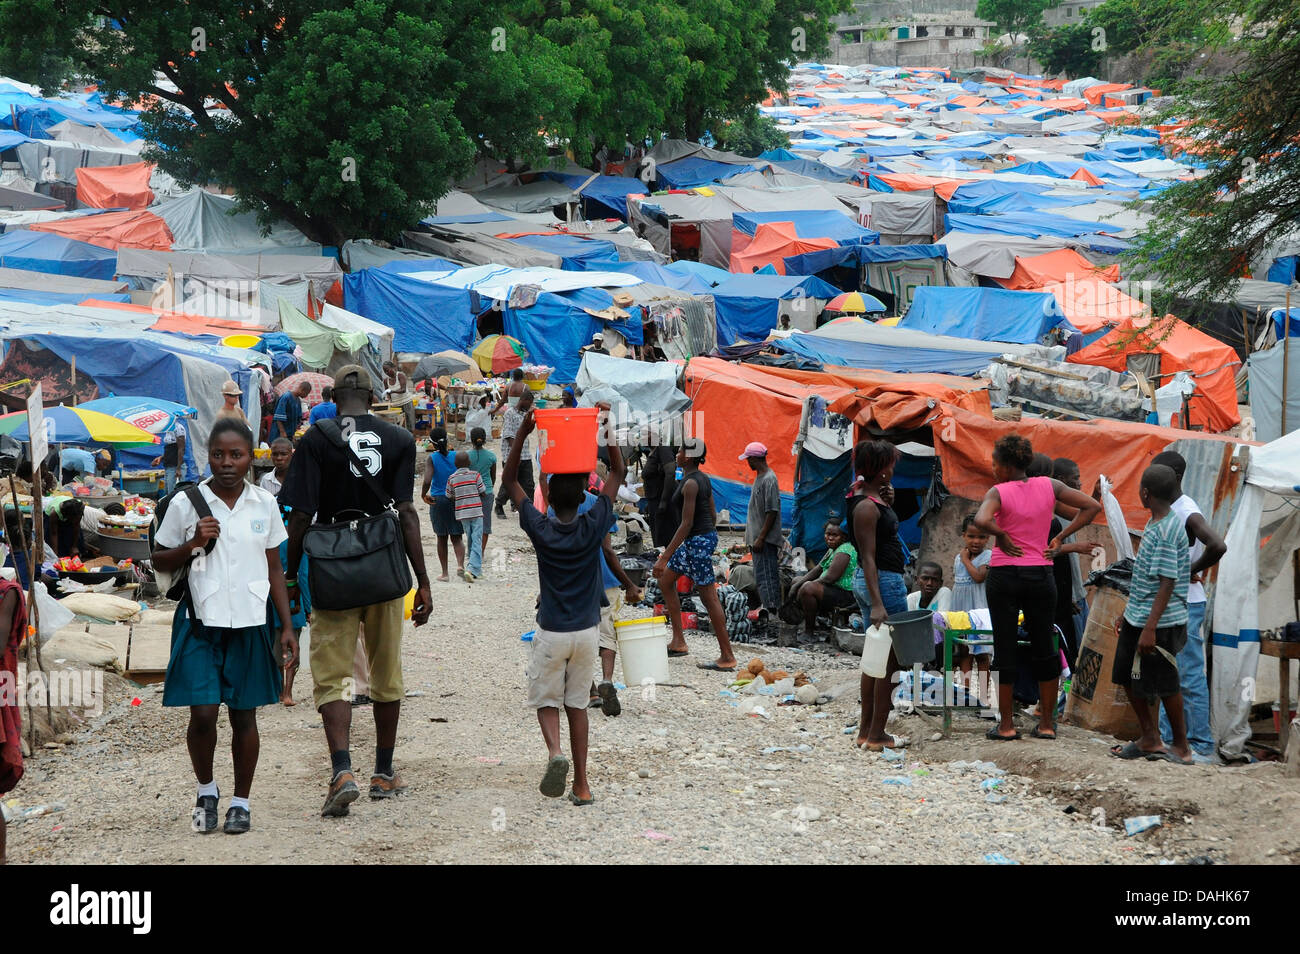 Gli haitiani ritorno alla normalità in Petionville Refugee Camp in seguito al terremoto di magnitudine 7.0 che ha ucciso 220.000 persone 26 aprile 2010 a Port-au-Prince, Haiti. Foto Stock